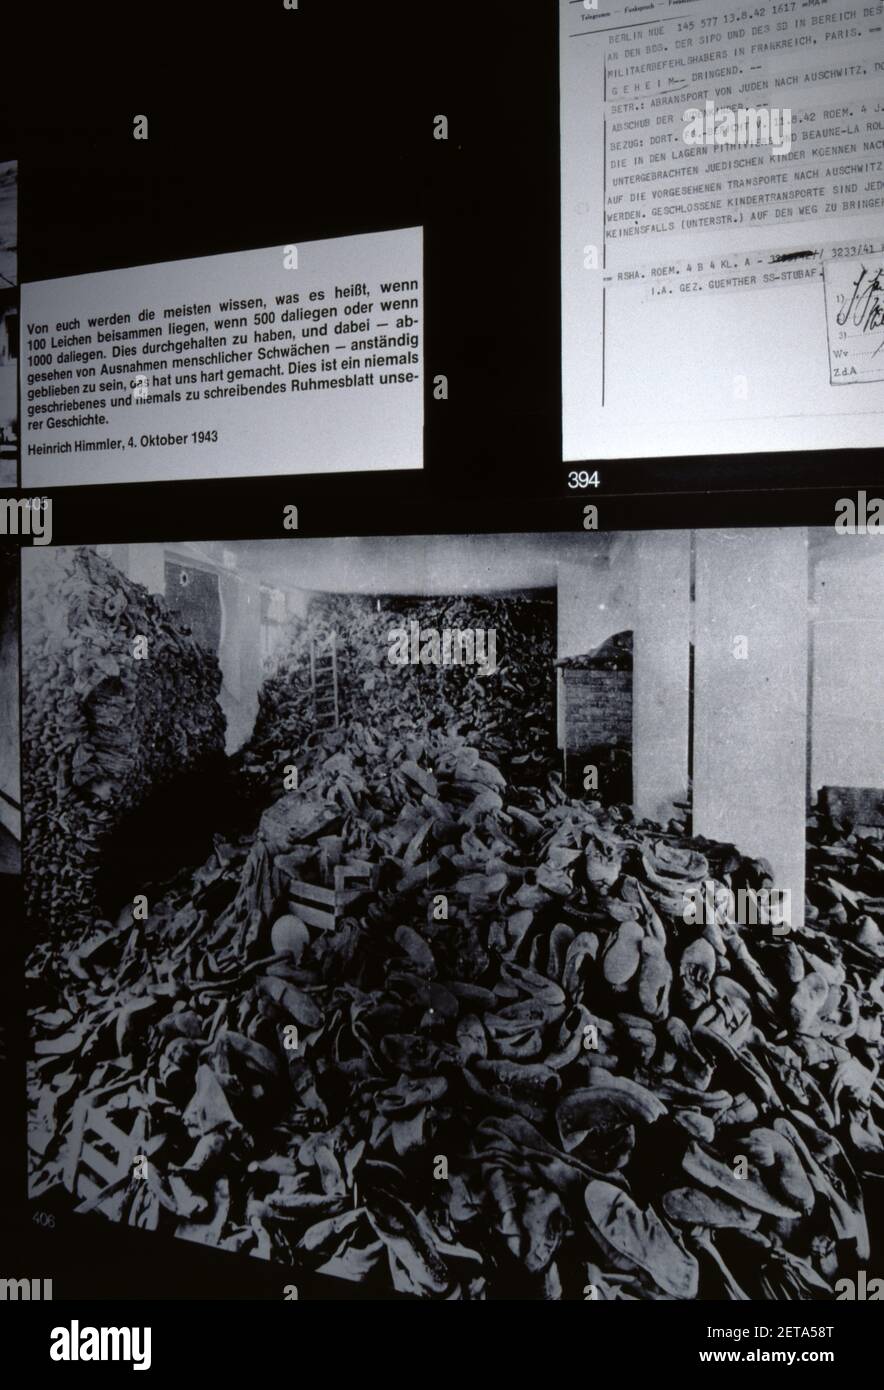 Dachau, Allemagne. 6/26/1990. Musée du camp de concentration de Dachau. Du 22 mars 1933 au 29 avril 1945. Premier camp construit par le Reich nazi. Photos d'époque B&W du musée du camp de concentration de Dachau. Banque D'Images